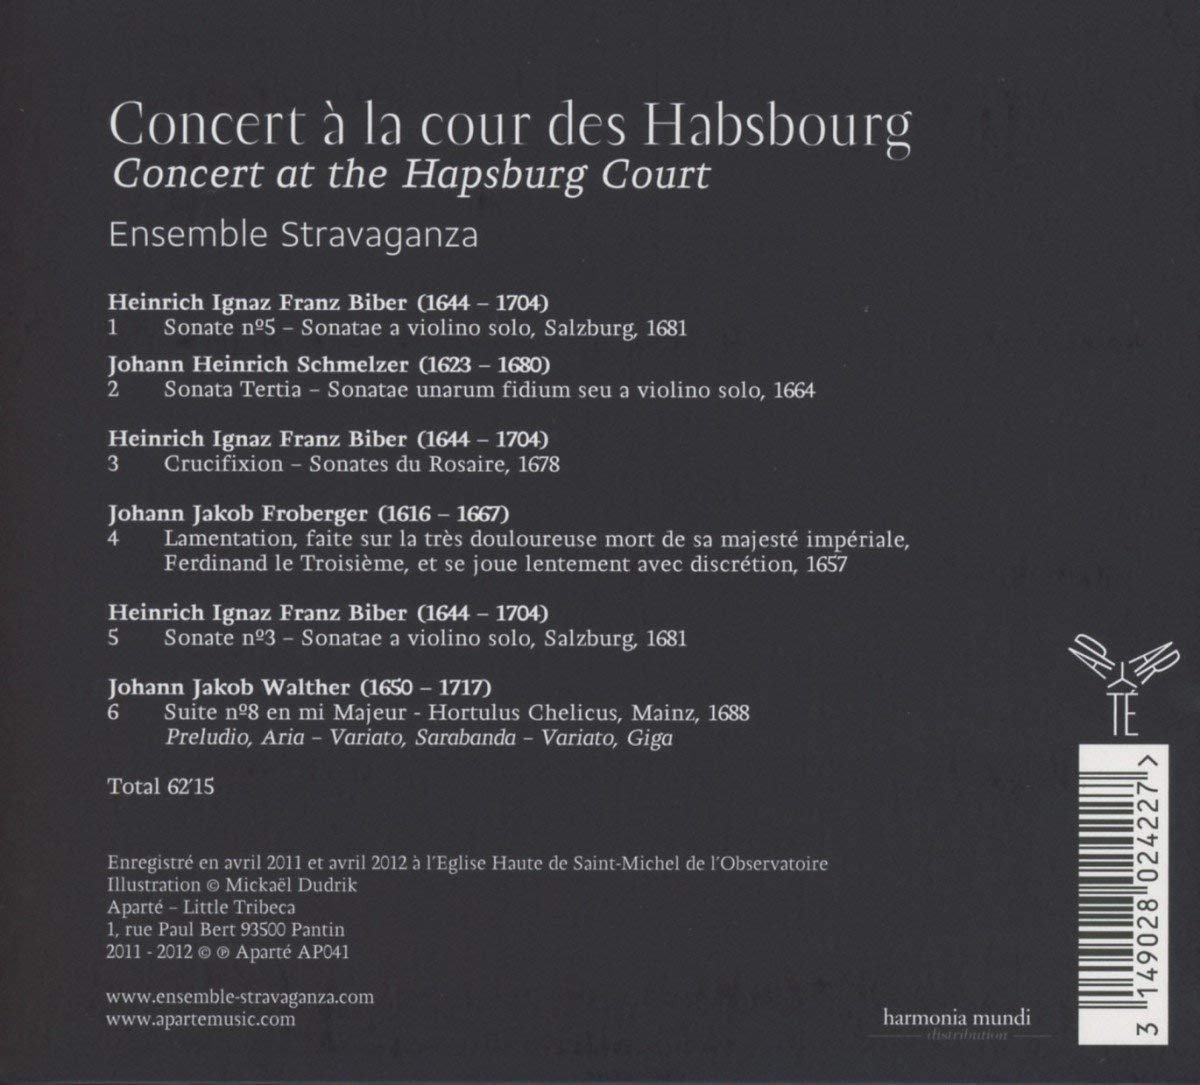 Concert a la cour des Habsburg - Biber, Schmelzer, Froberger, Walther - slide-1